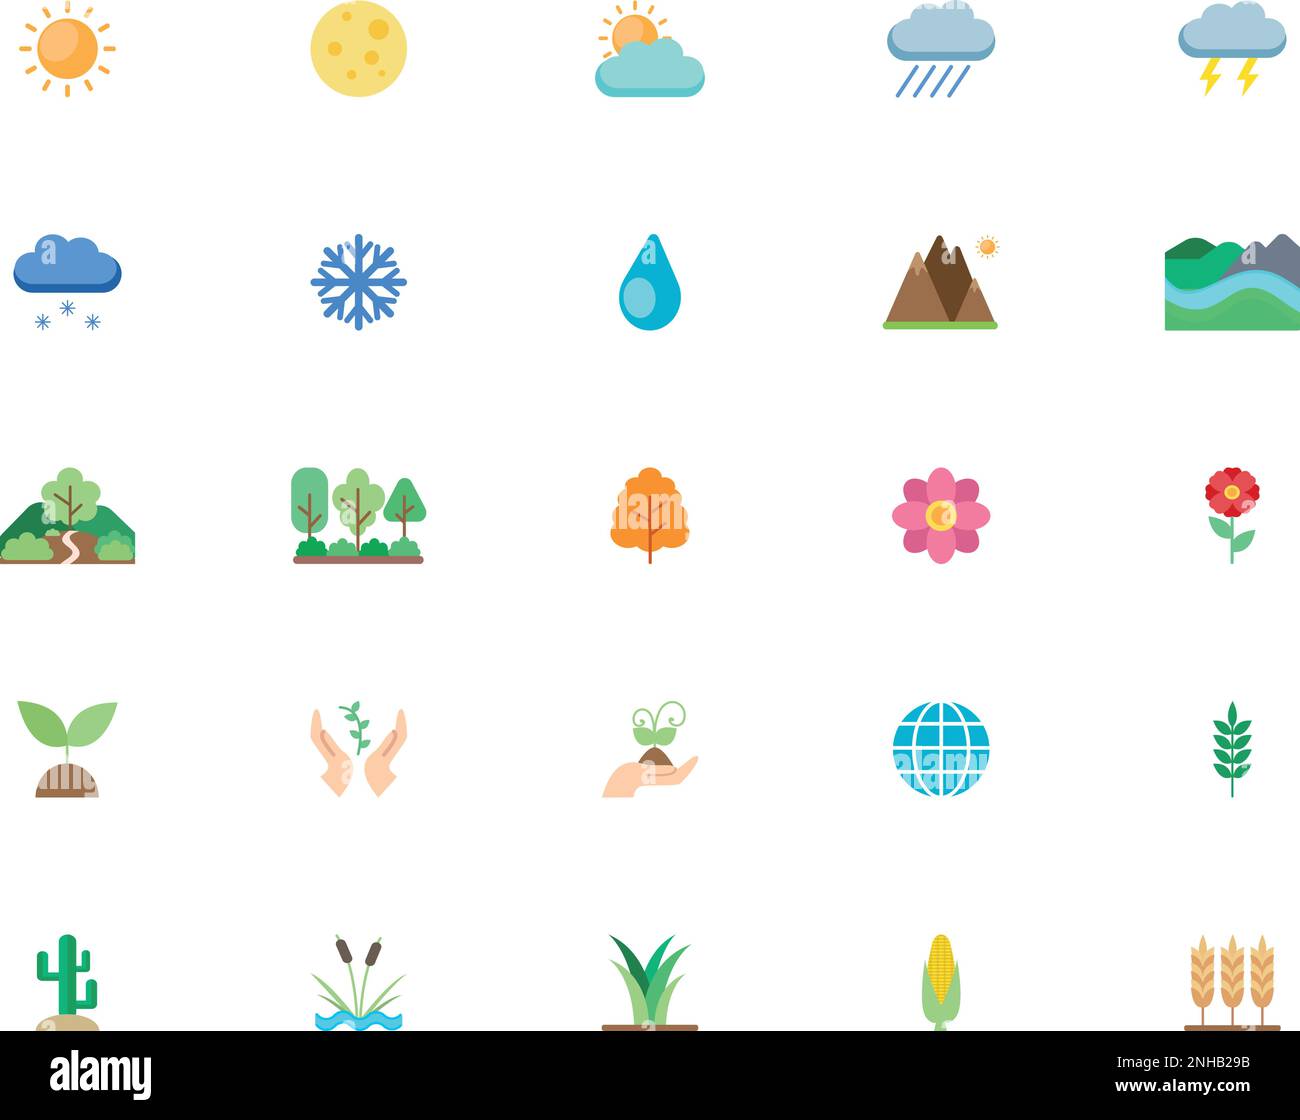 Natur und Umgebung – eine Reihe von Ikonen in flachem Stil. Eine Packung leuchtender Symbole für Ökologie, Wetter, Jahreszeiten und Landschaft. Vektorkunst Stock Vektor